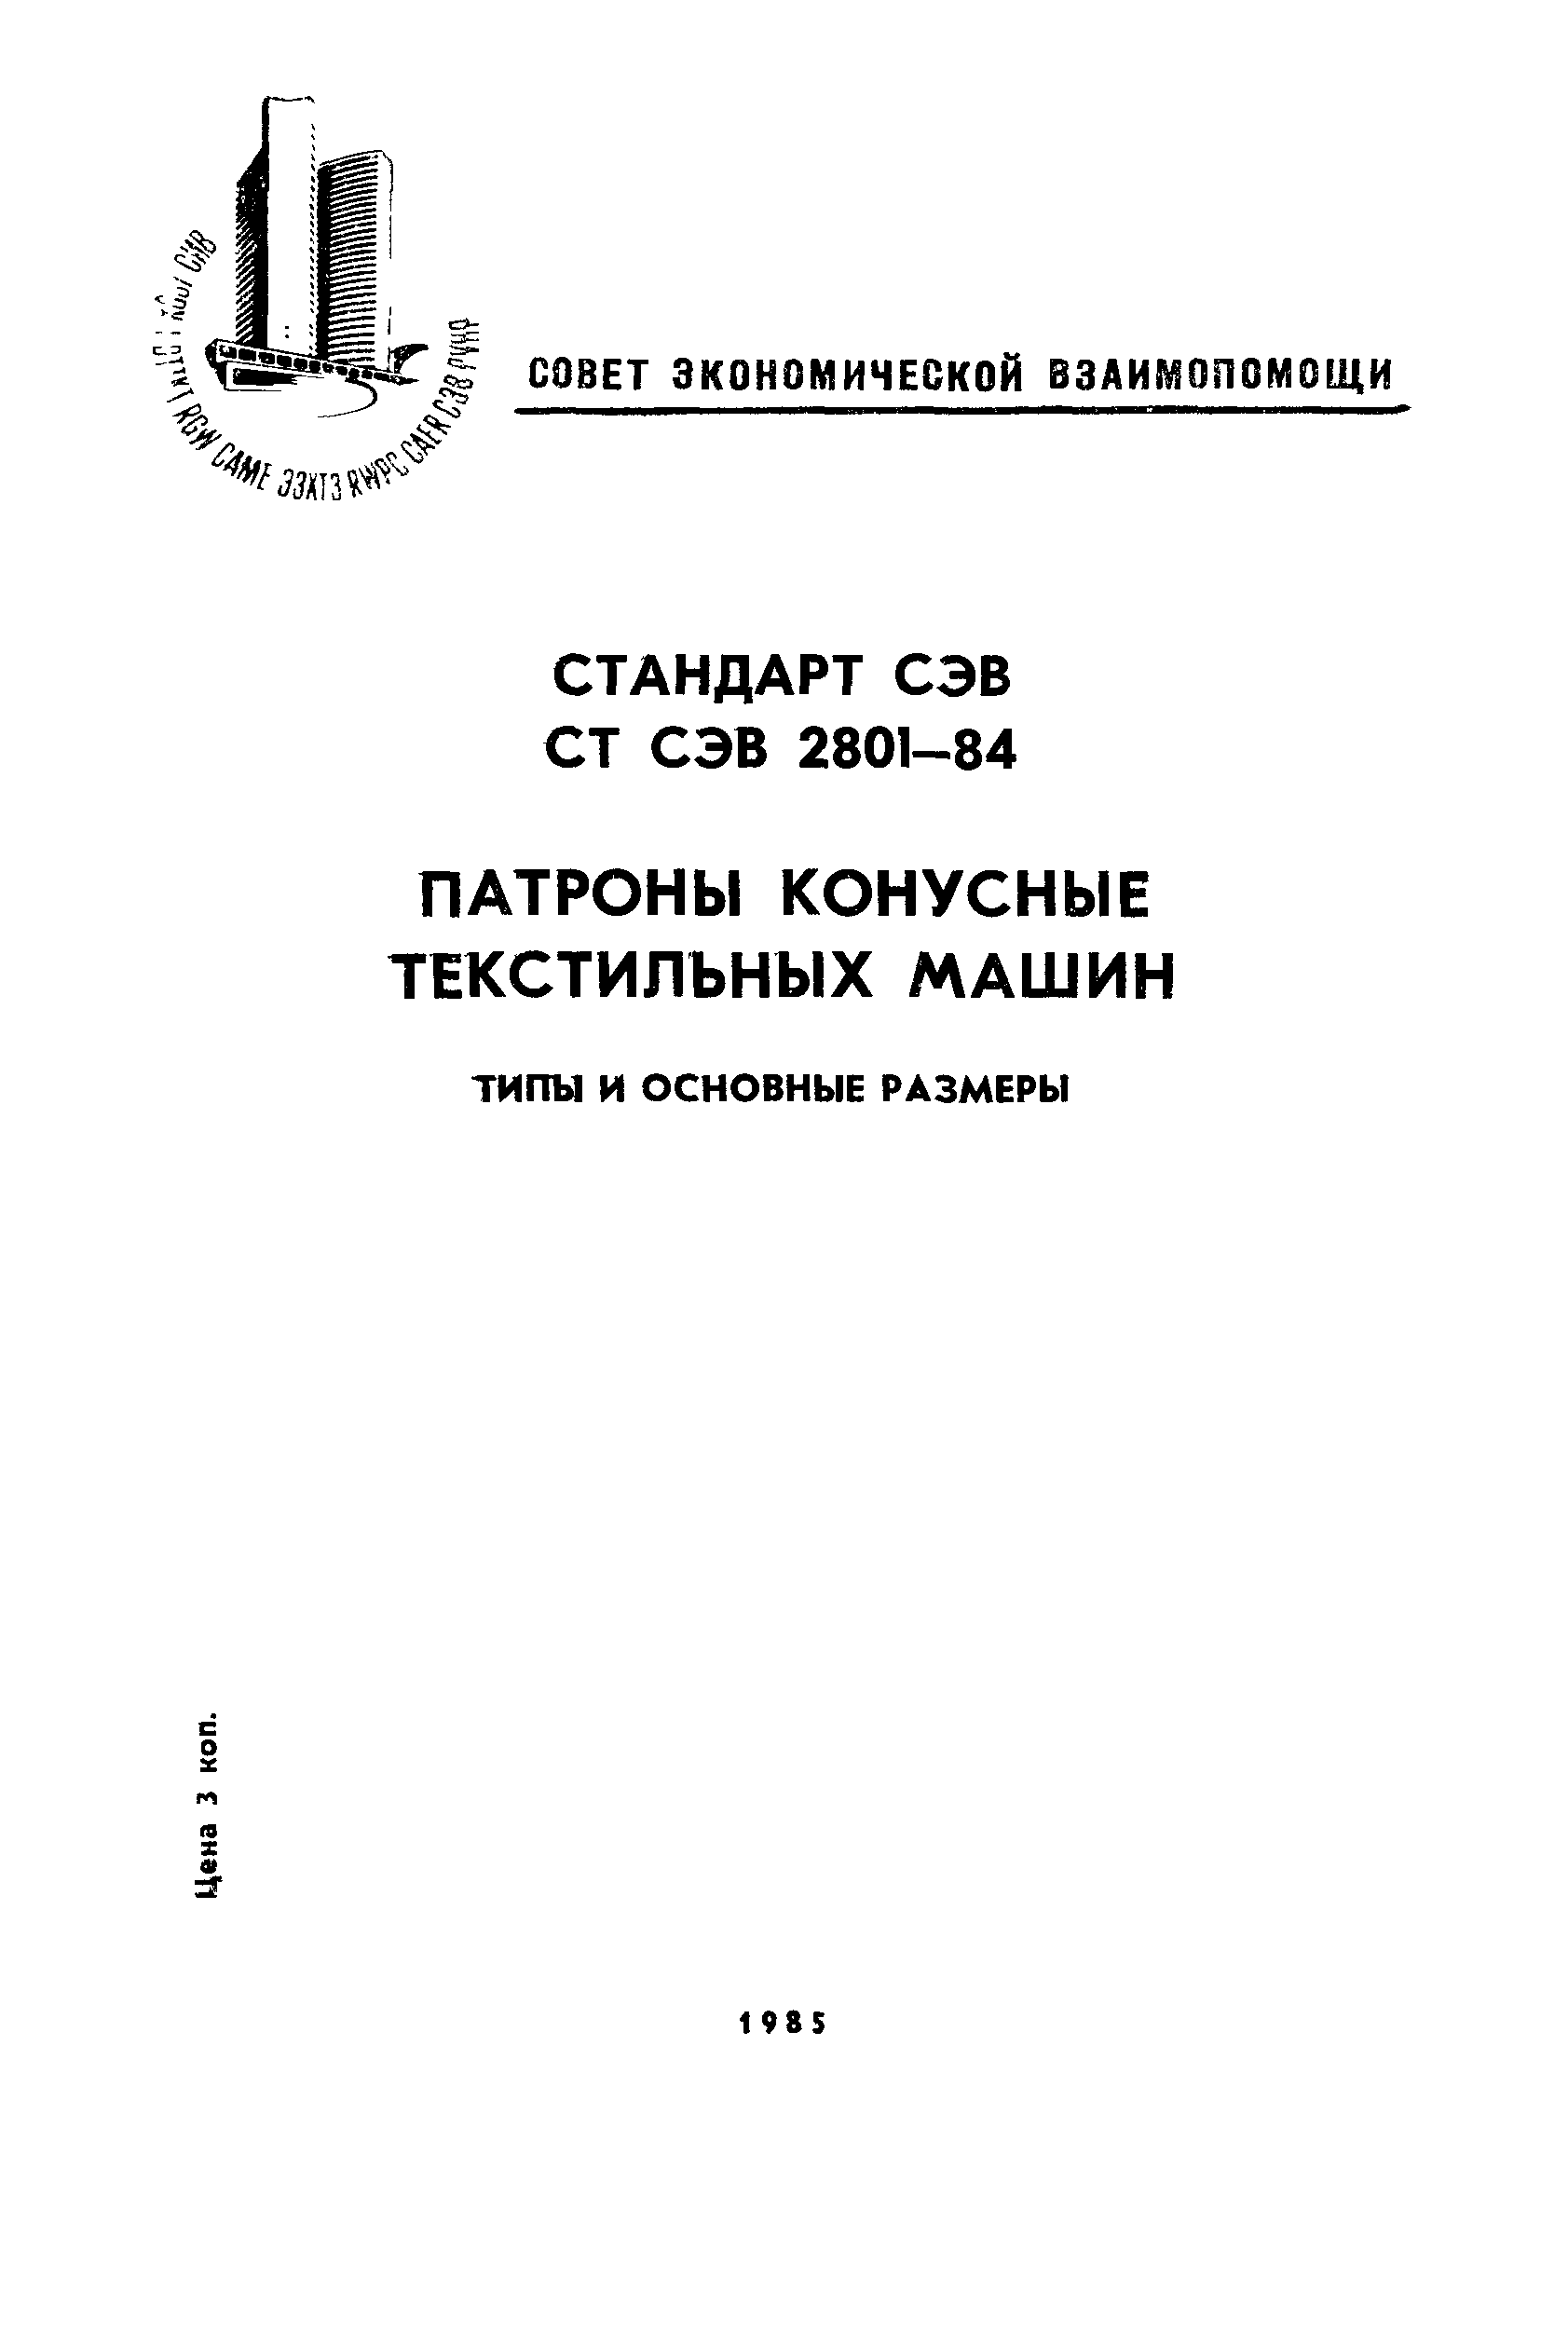 СТ СЭВ 2801-84